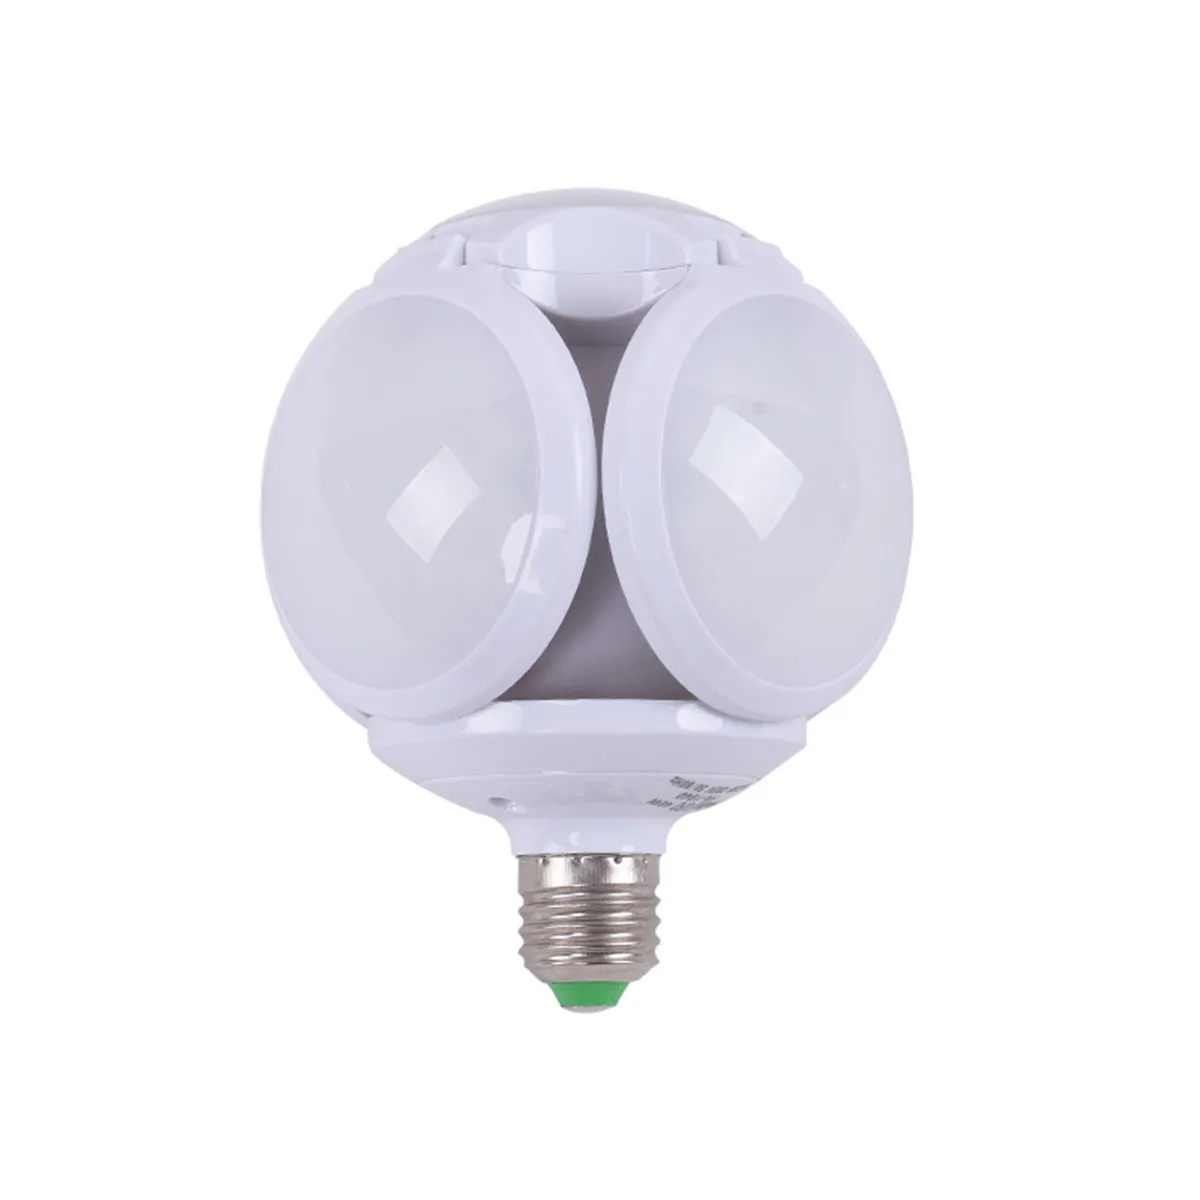 Супер яркий светодиодный складной лампа E27 40 Вт Футбол моделирующая лампа AC 85-265V Светодиодный лампа лампочка в виде шара пузыря складной заменить галогенные светильник - Испускаемый цвет: White